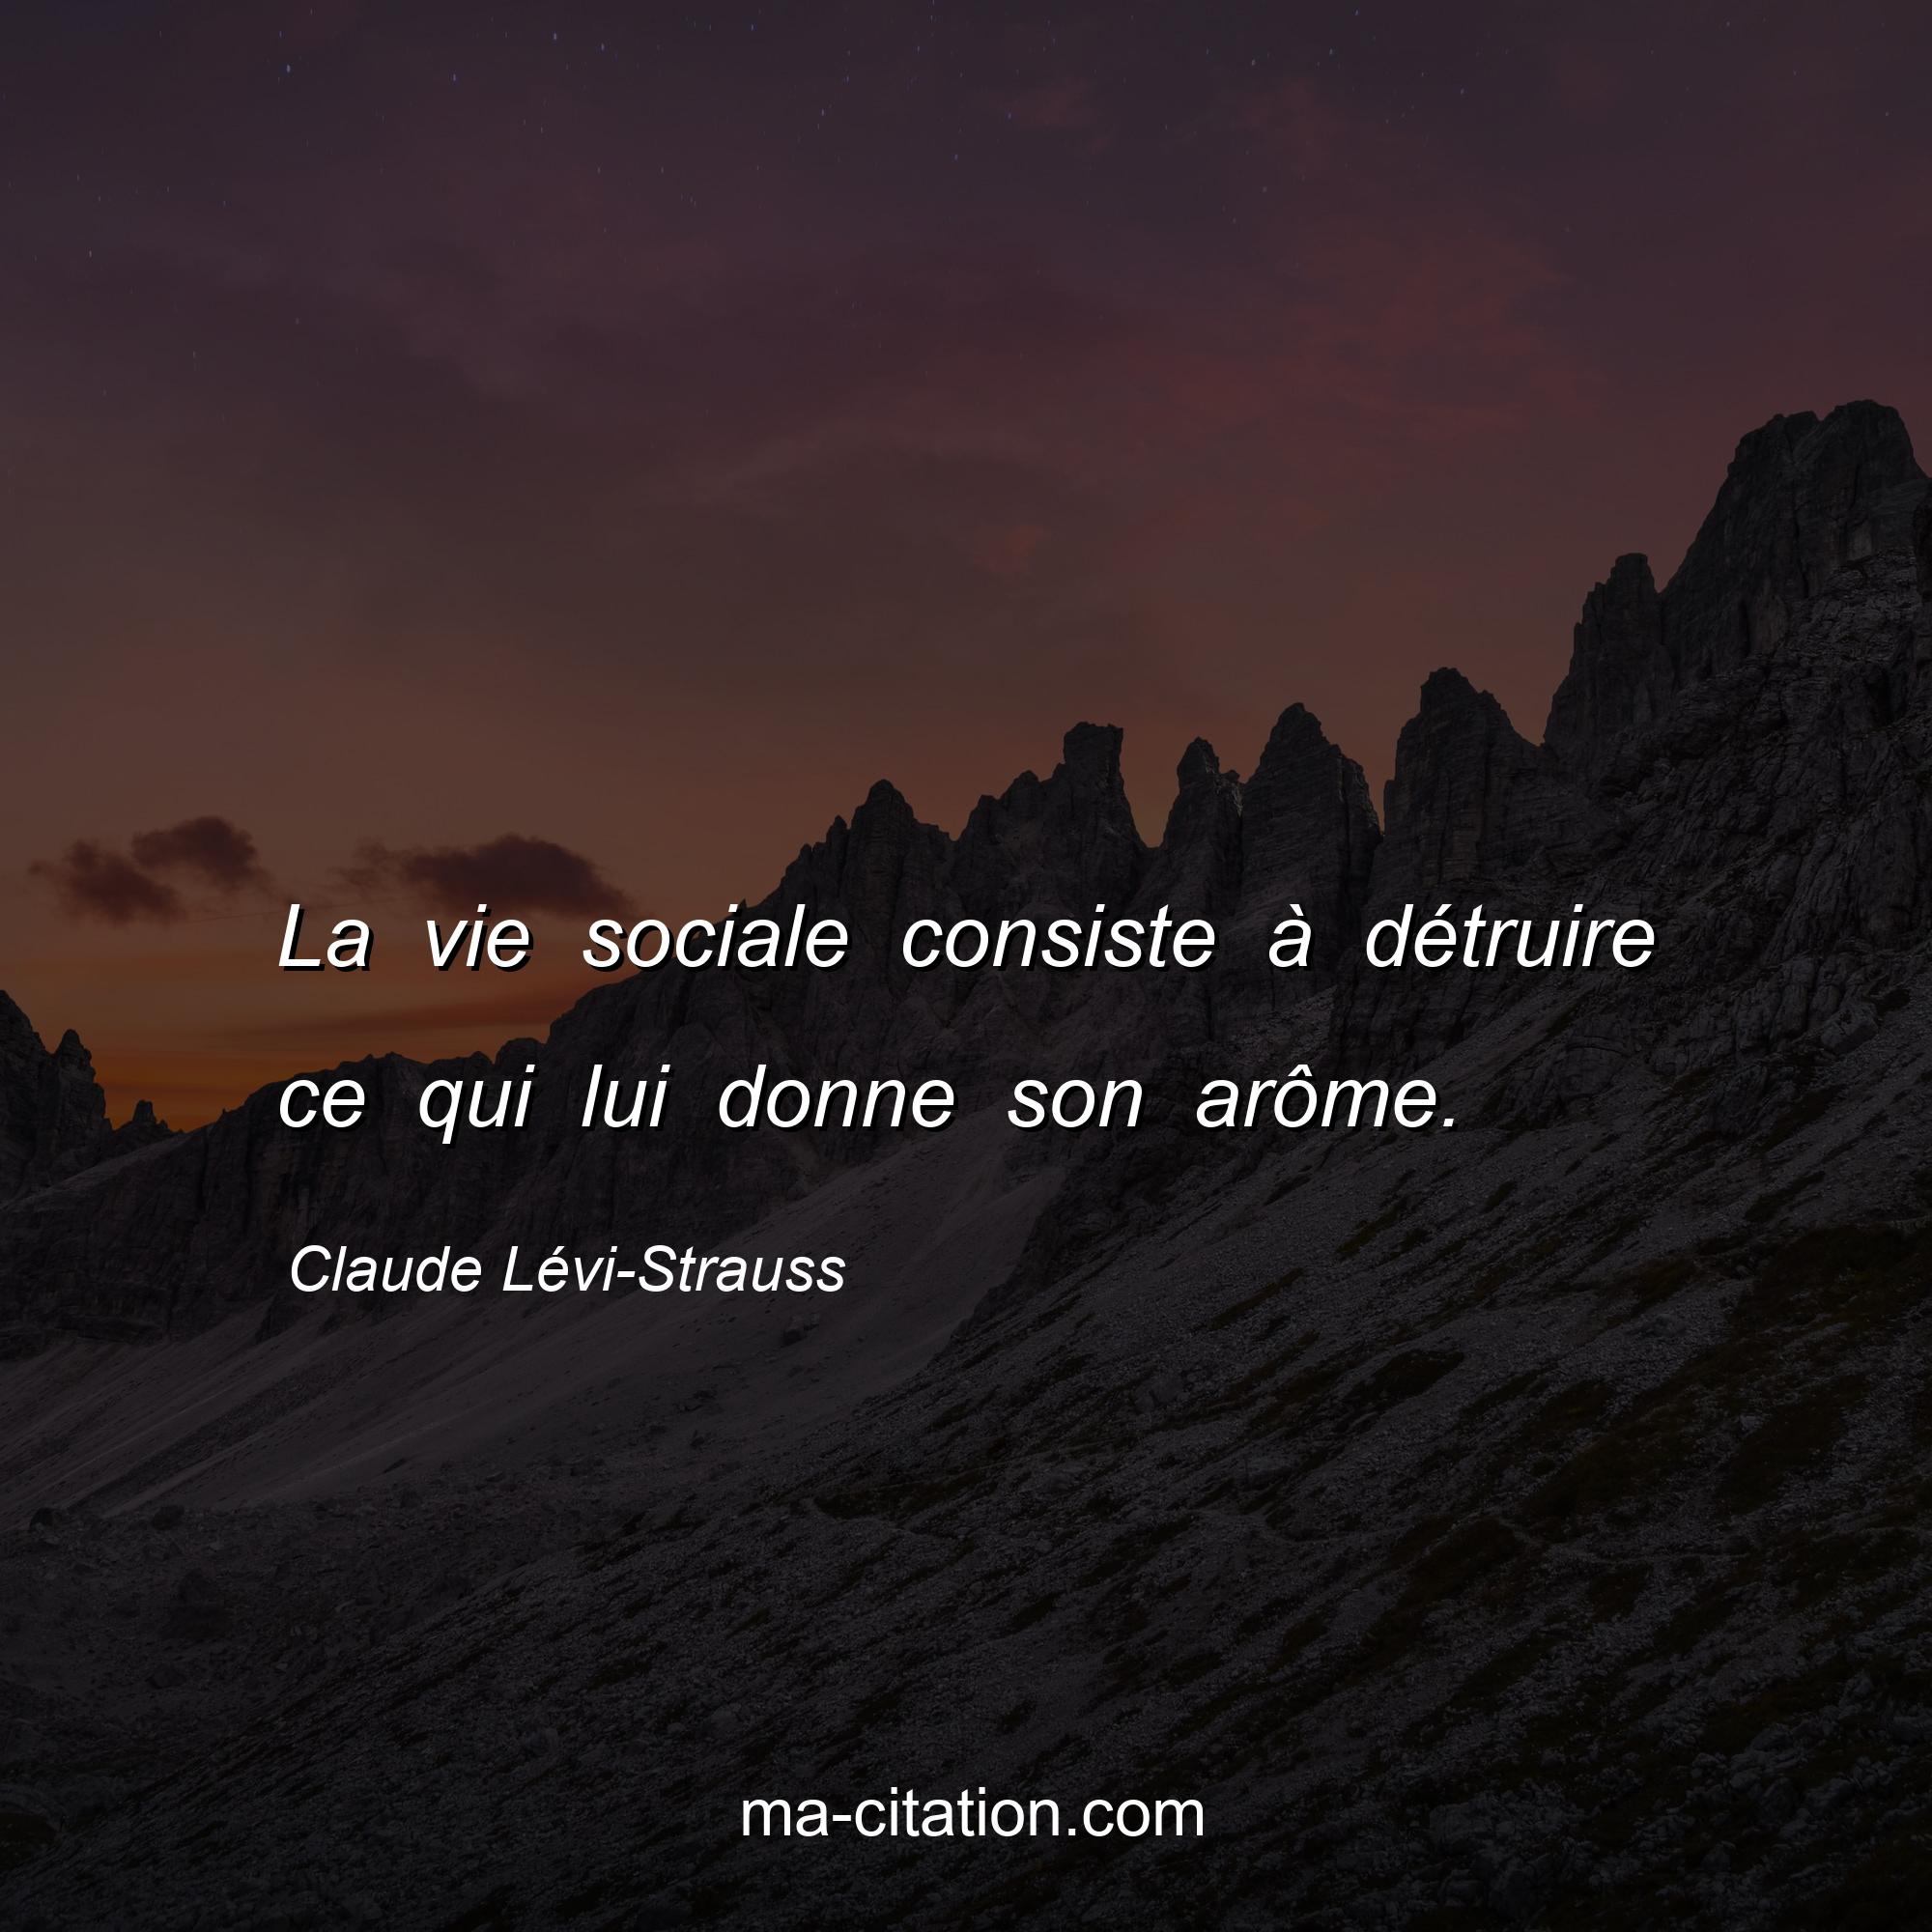 Claude Lévi-Strauss : La vie sociale consiste à détruire ce qui lui donne son arôme.